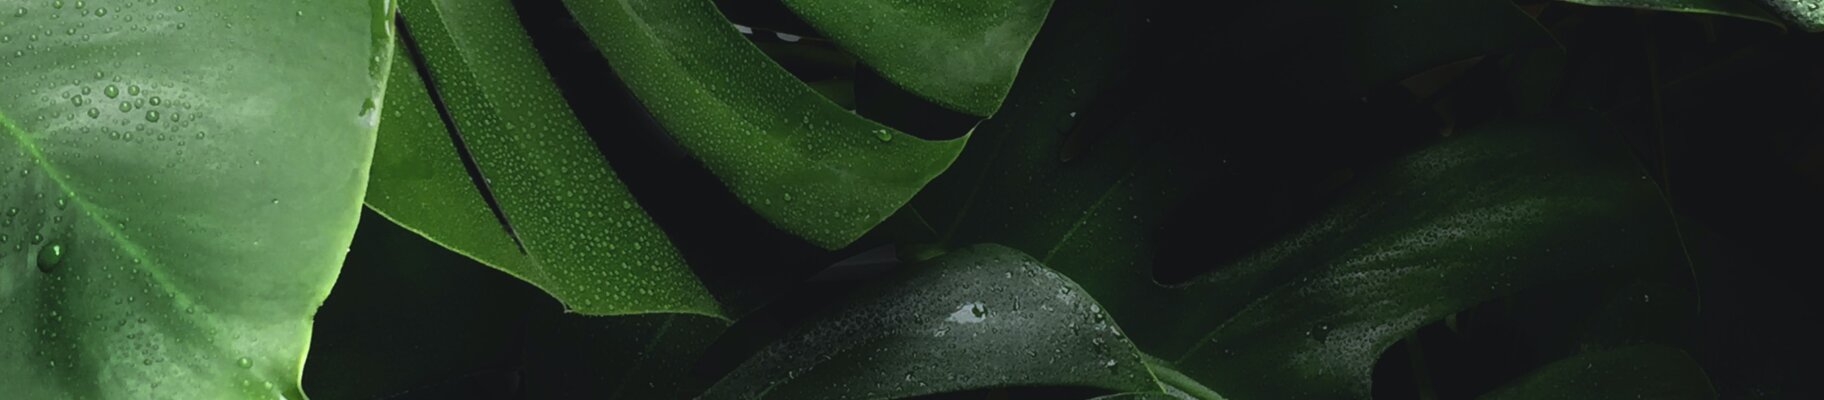 Grüne Blätter von einer Pflanze